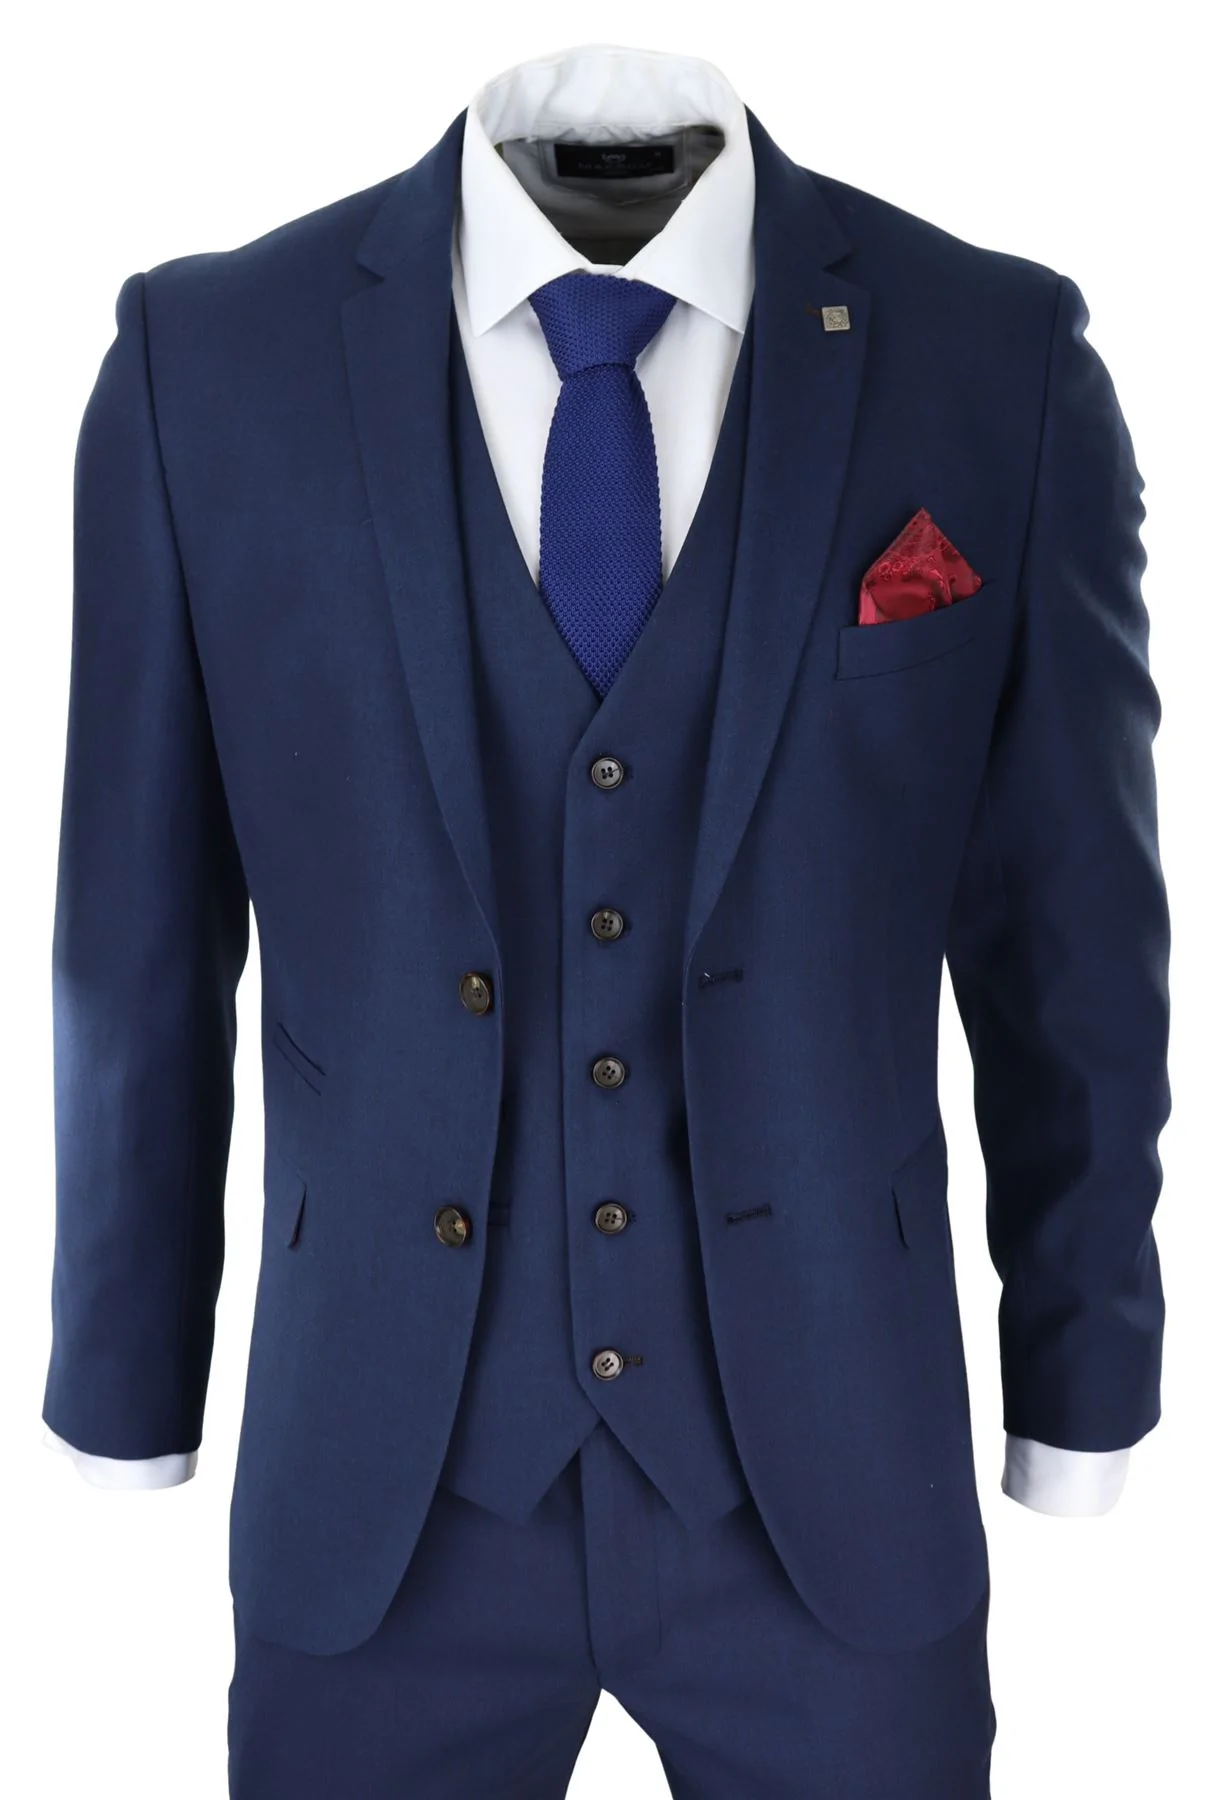 3 Piece Suits for Men - Buy Online - Happy Gentleman - United